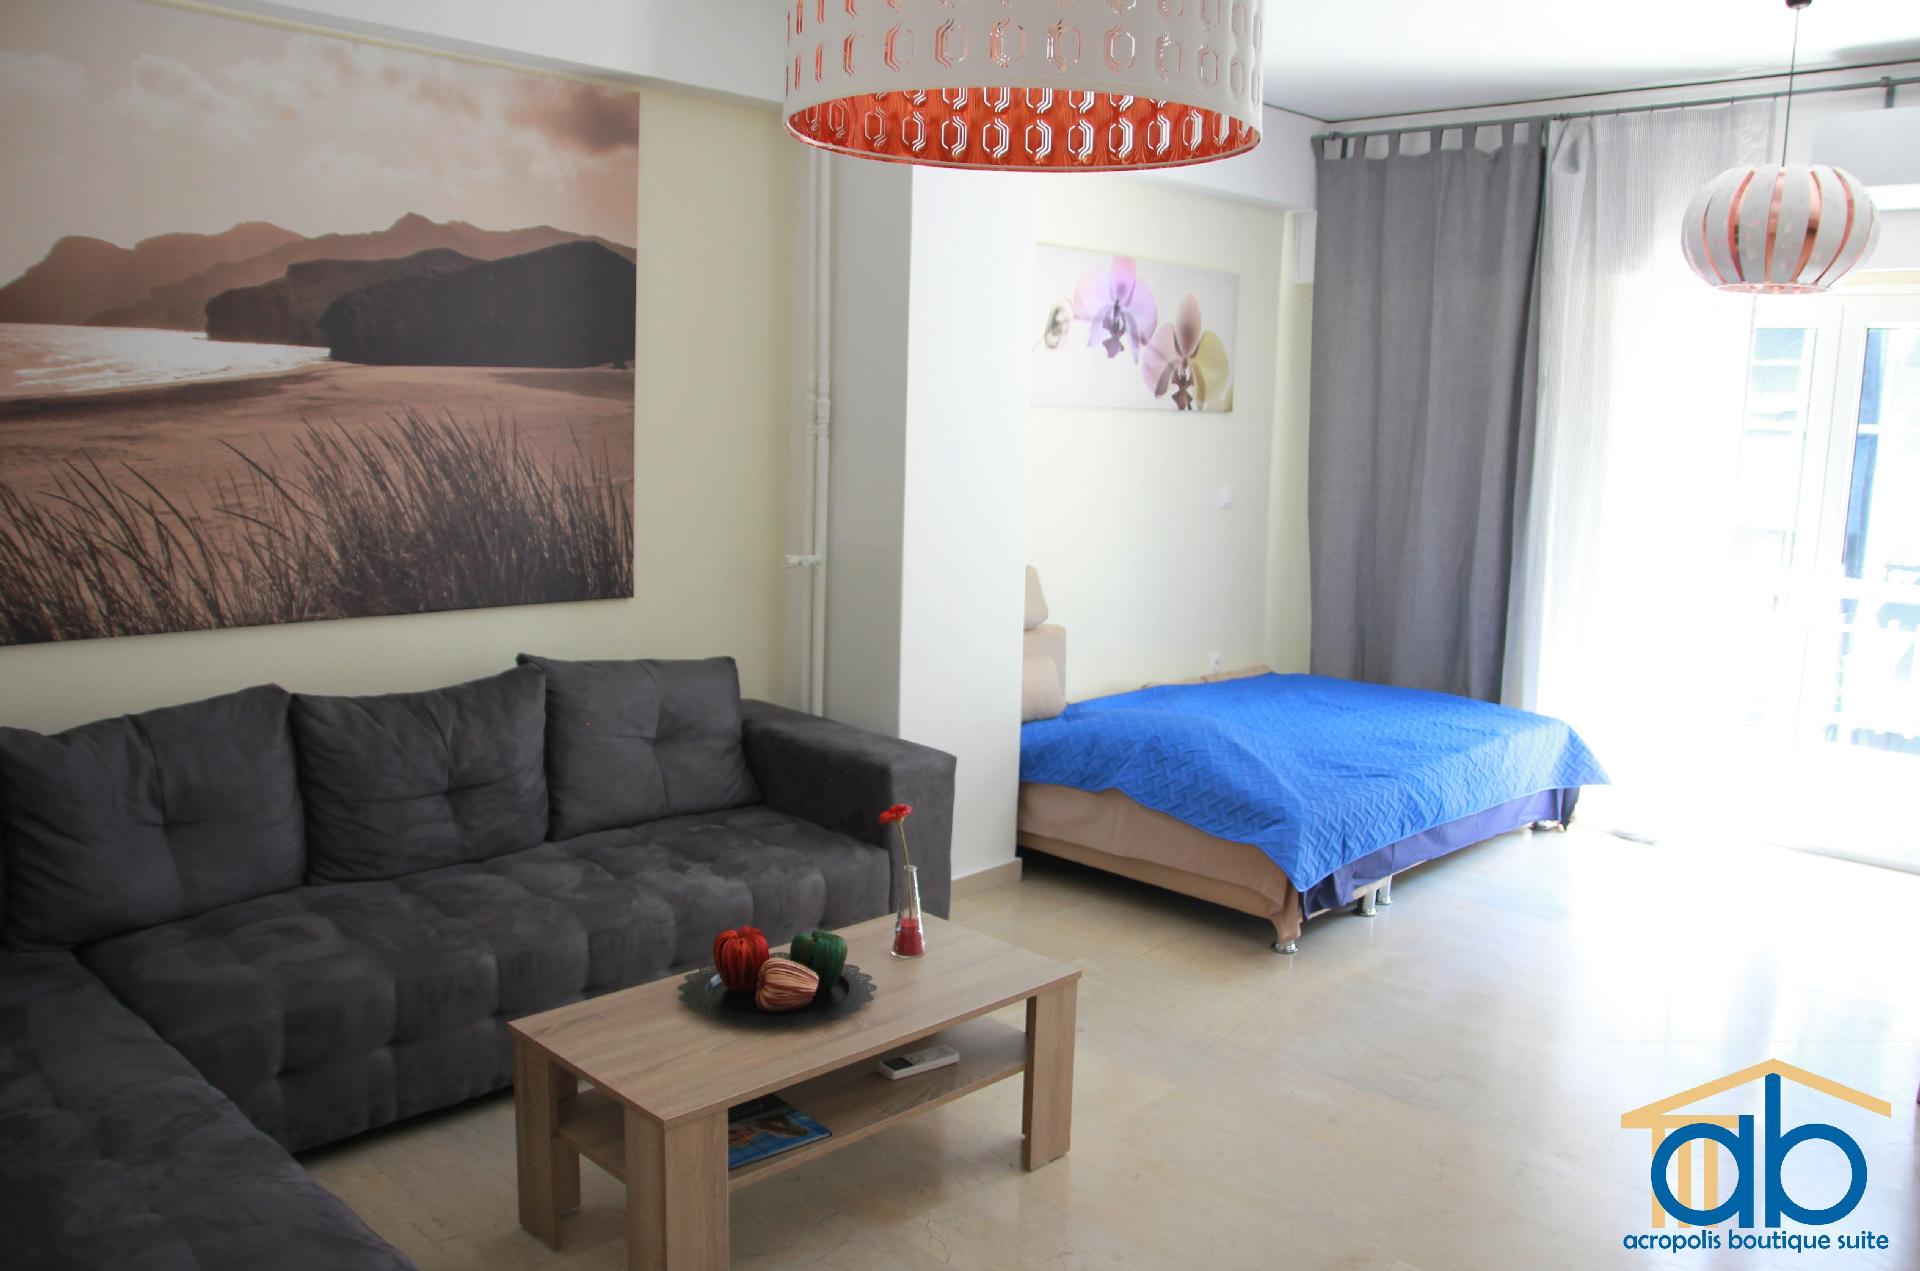 Ferienwohnung für 6 Personen ca. 100 m²  Ferienwohnung in Griechenland